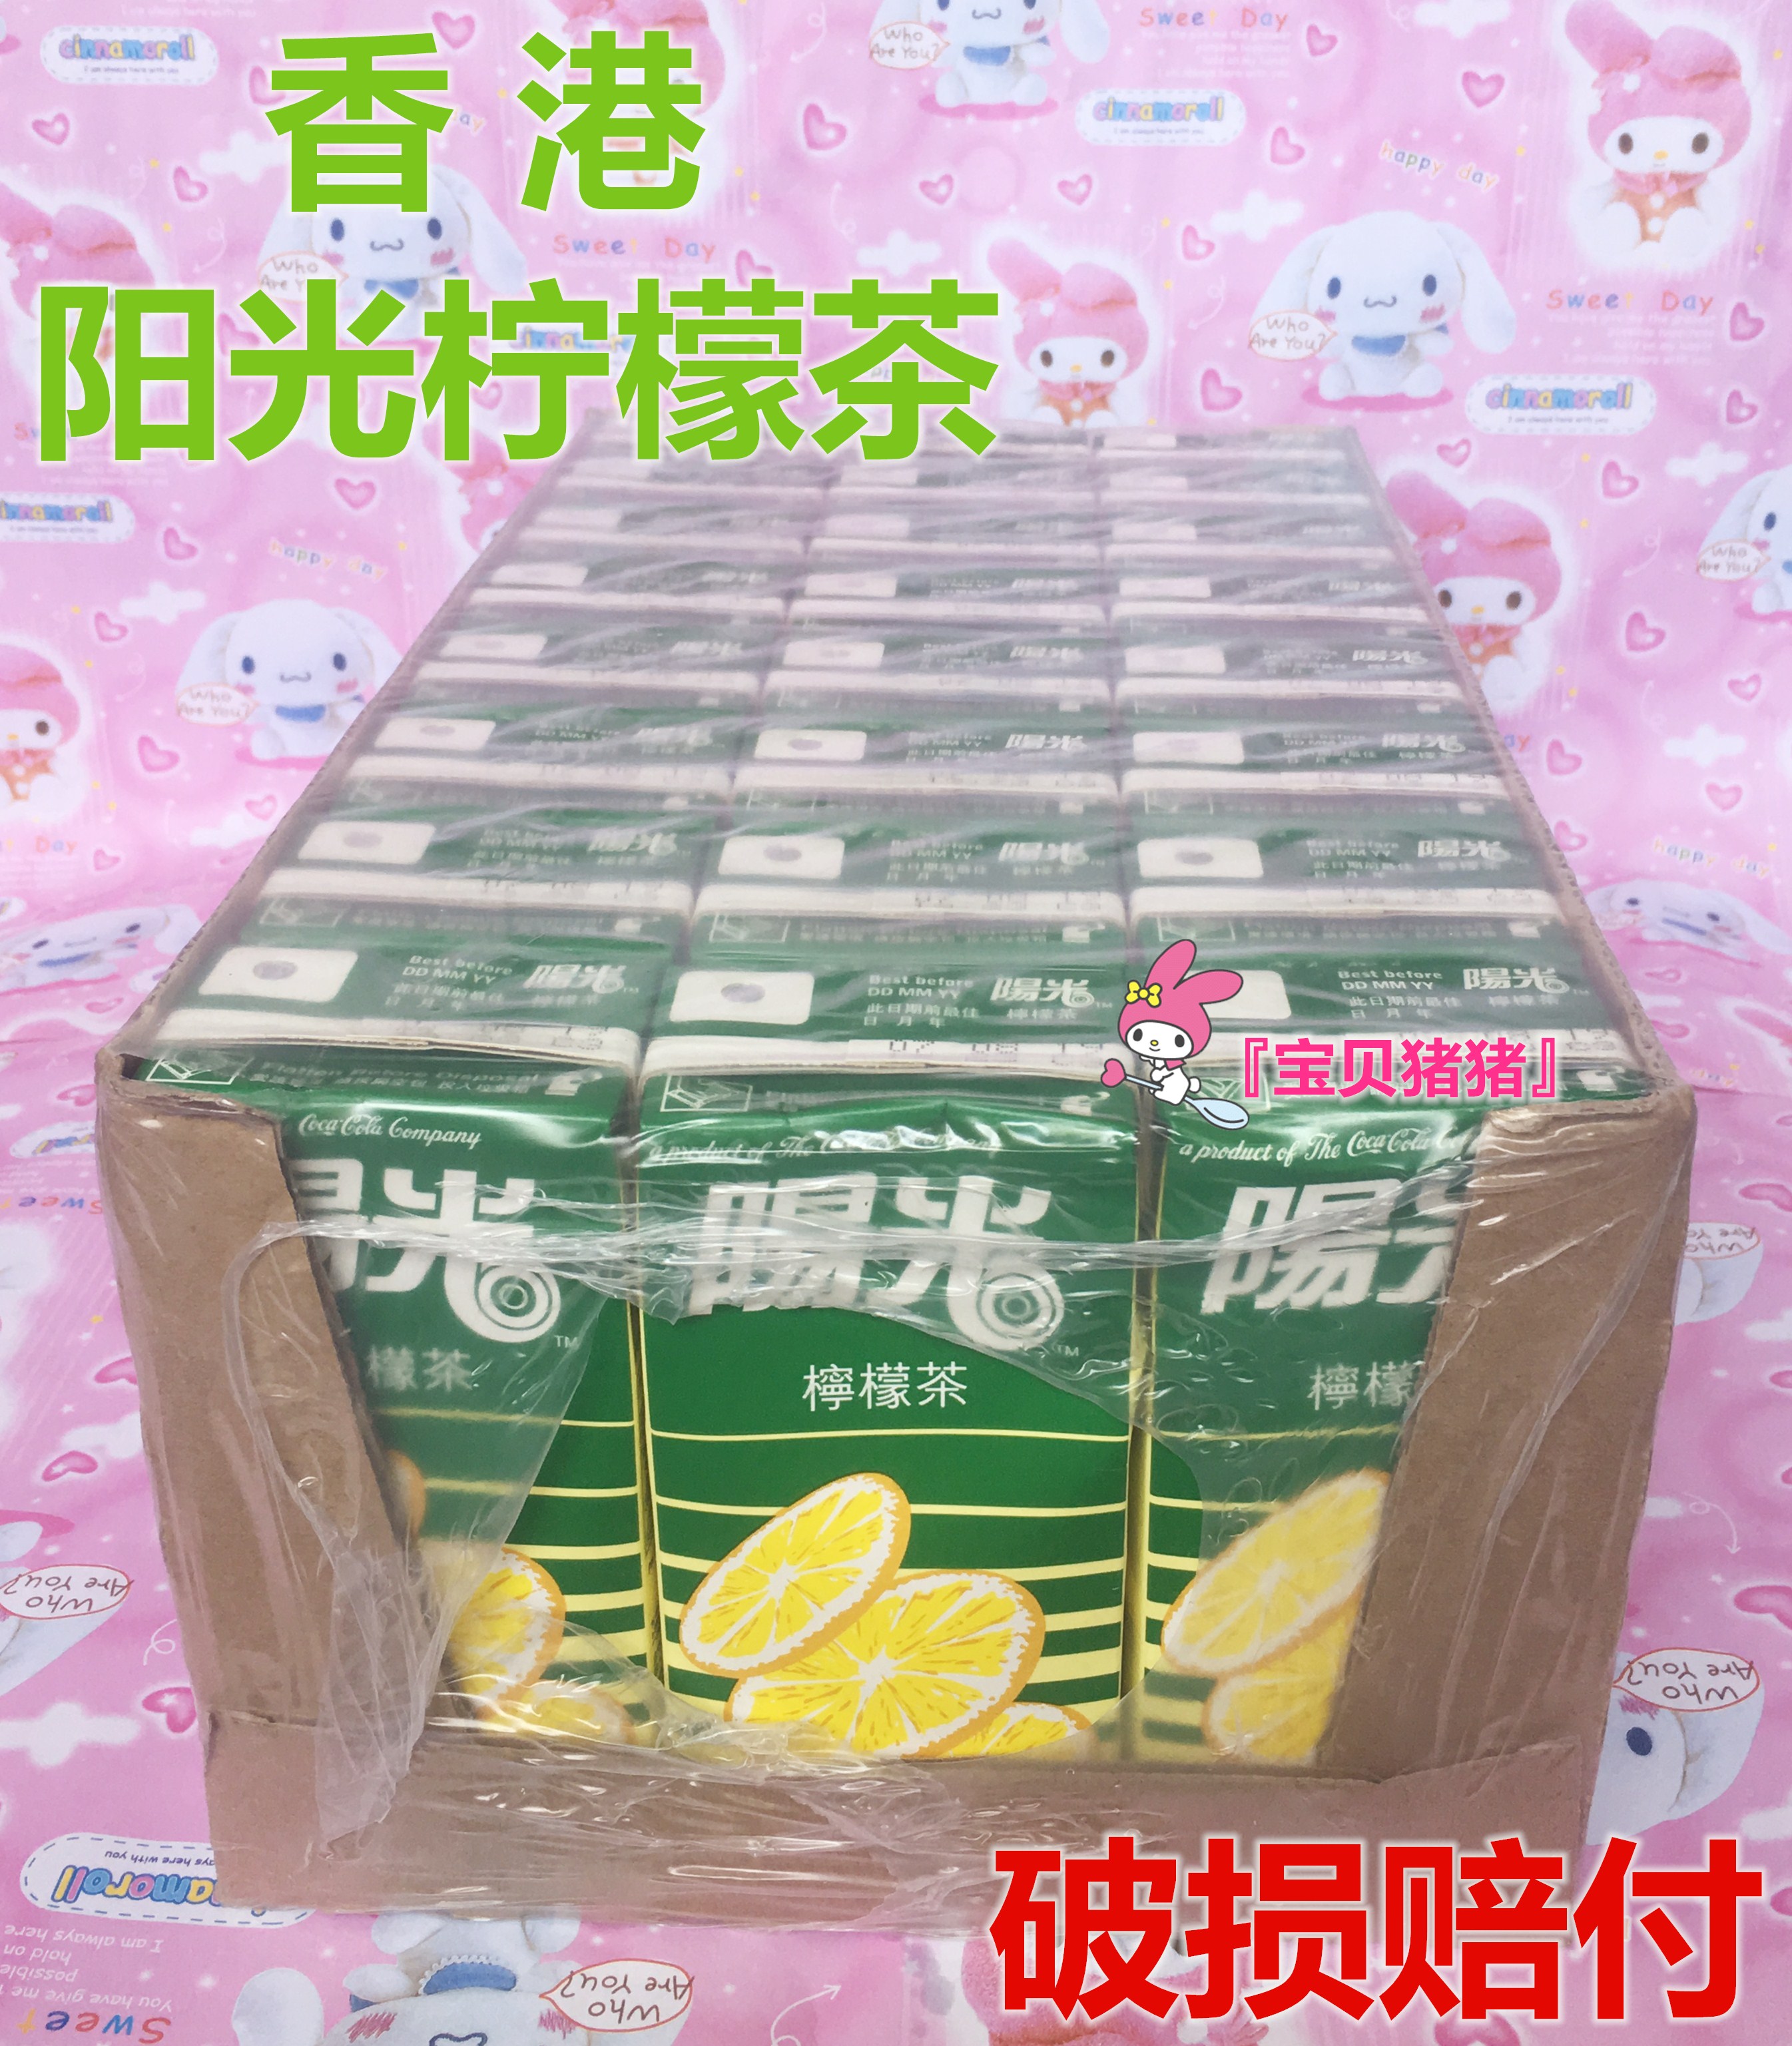 现货广东包邮 香港阳光柠檬茶进口饮料 330ml*24支/箱 港版柠檬汁